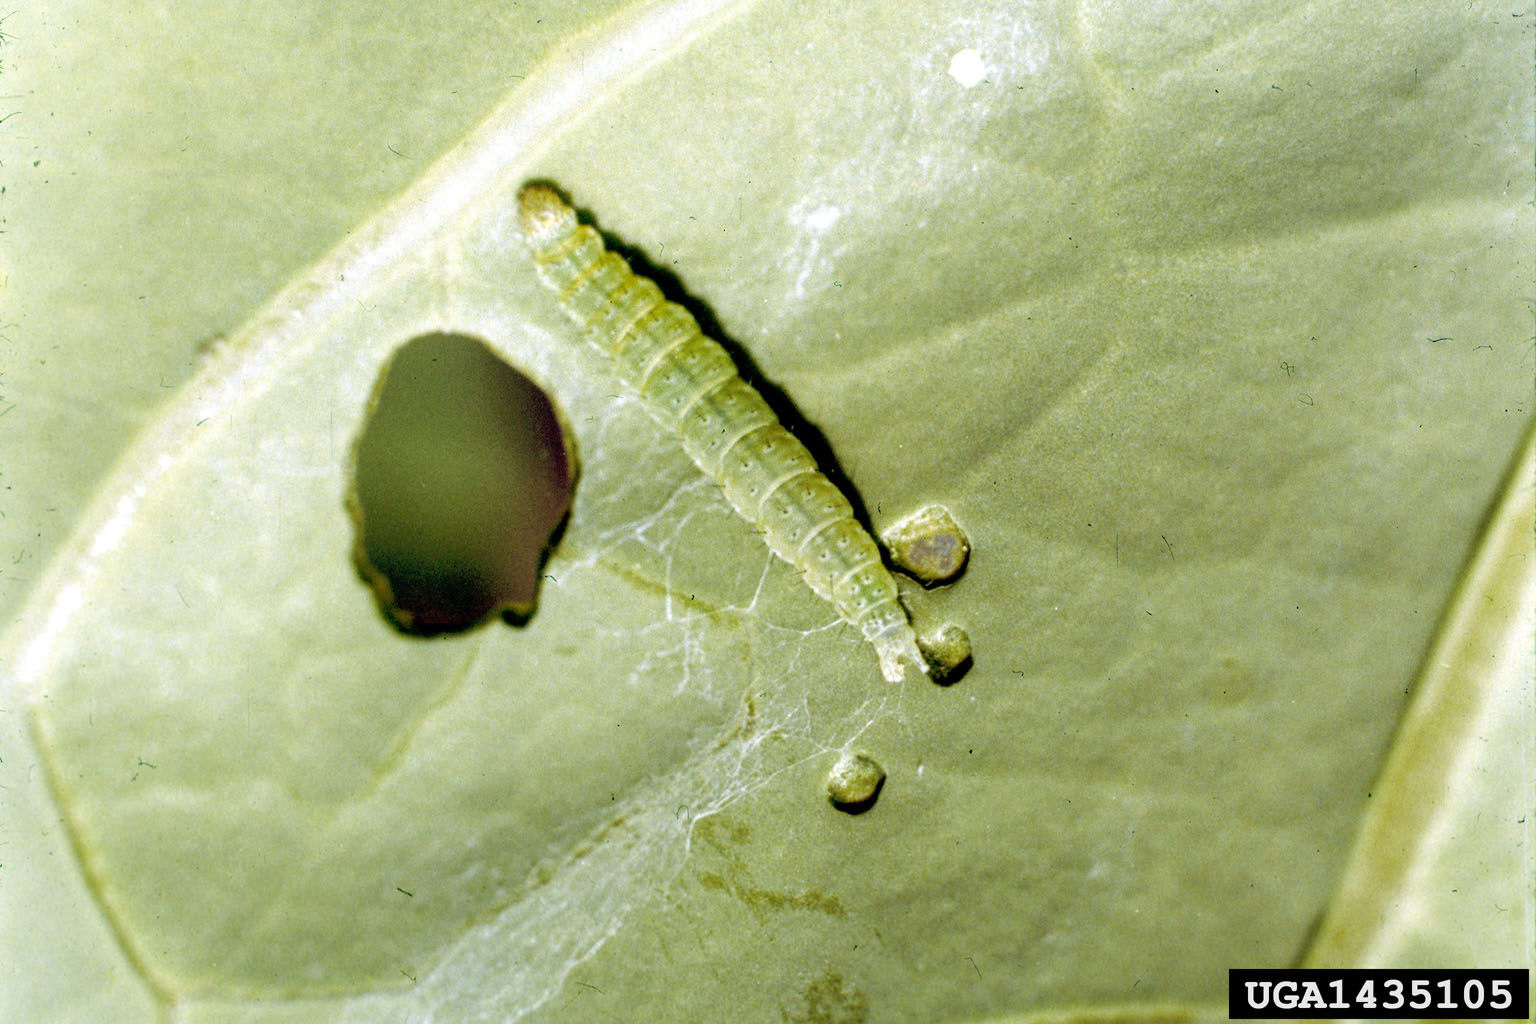 Diamondback moth larva on a leaf.